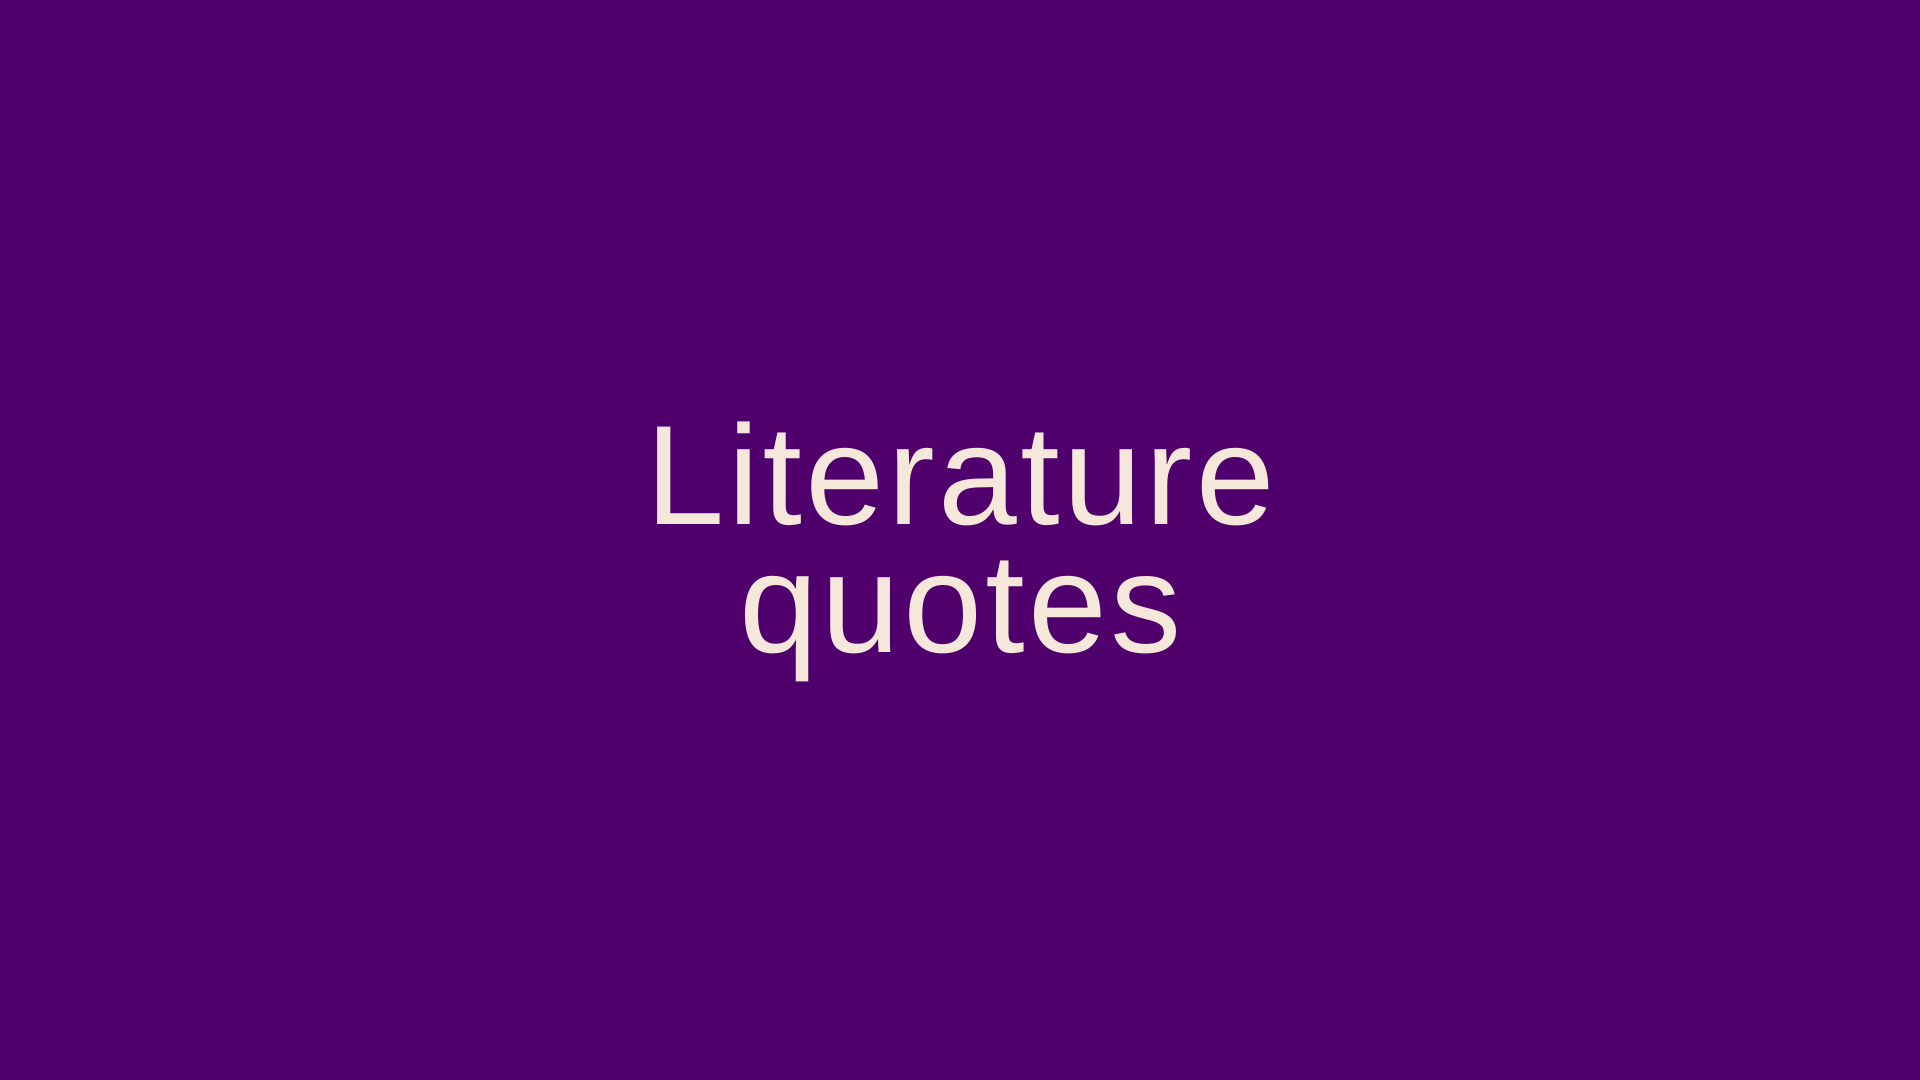 Literature quotes